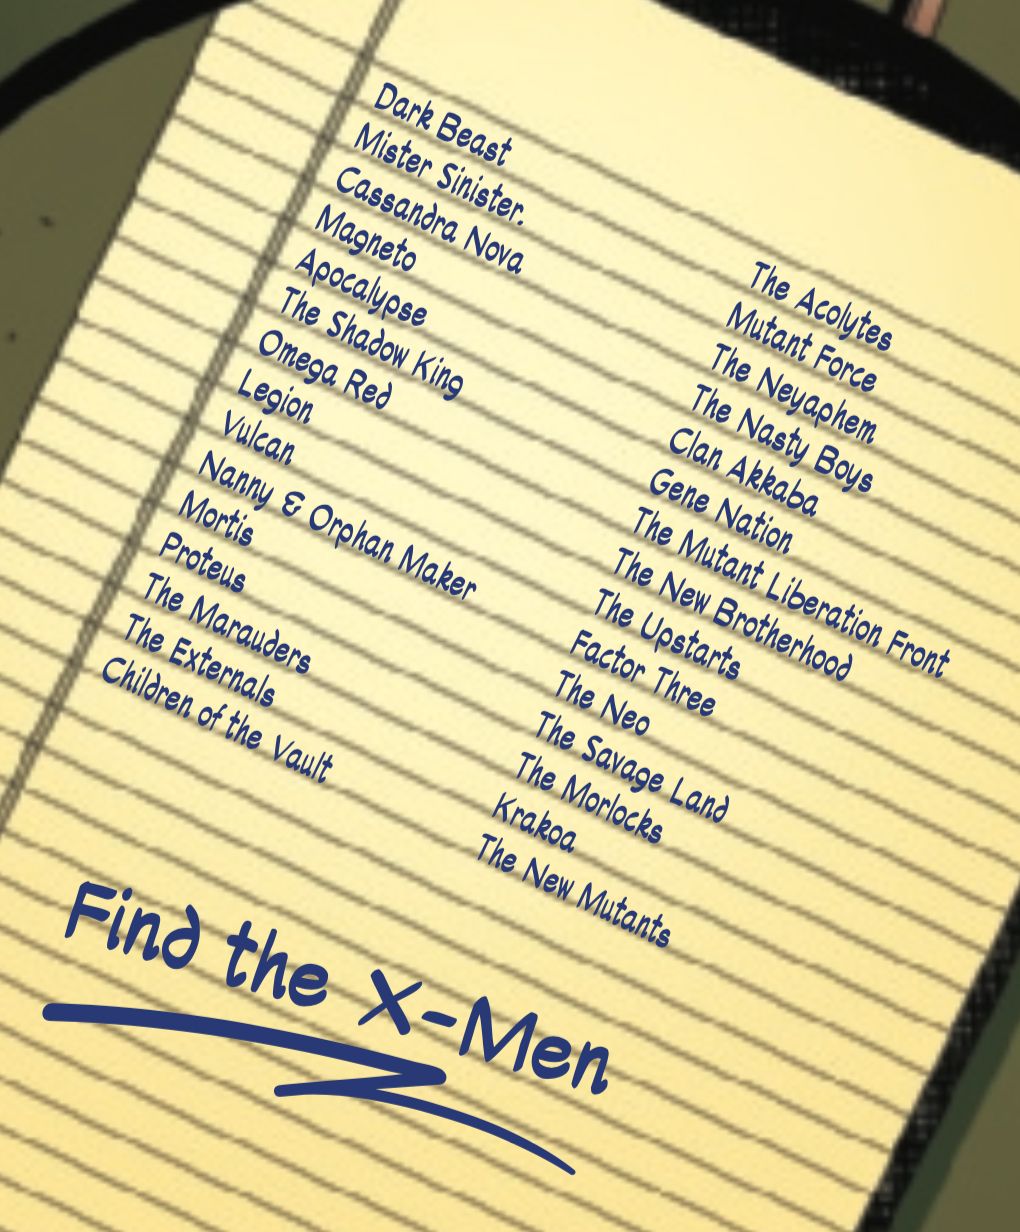 Uncanny X-Men list